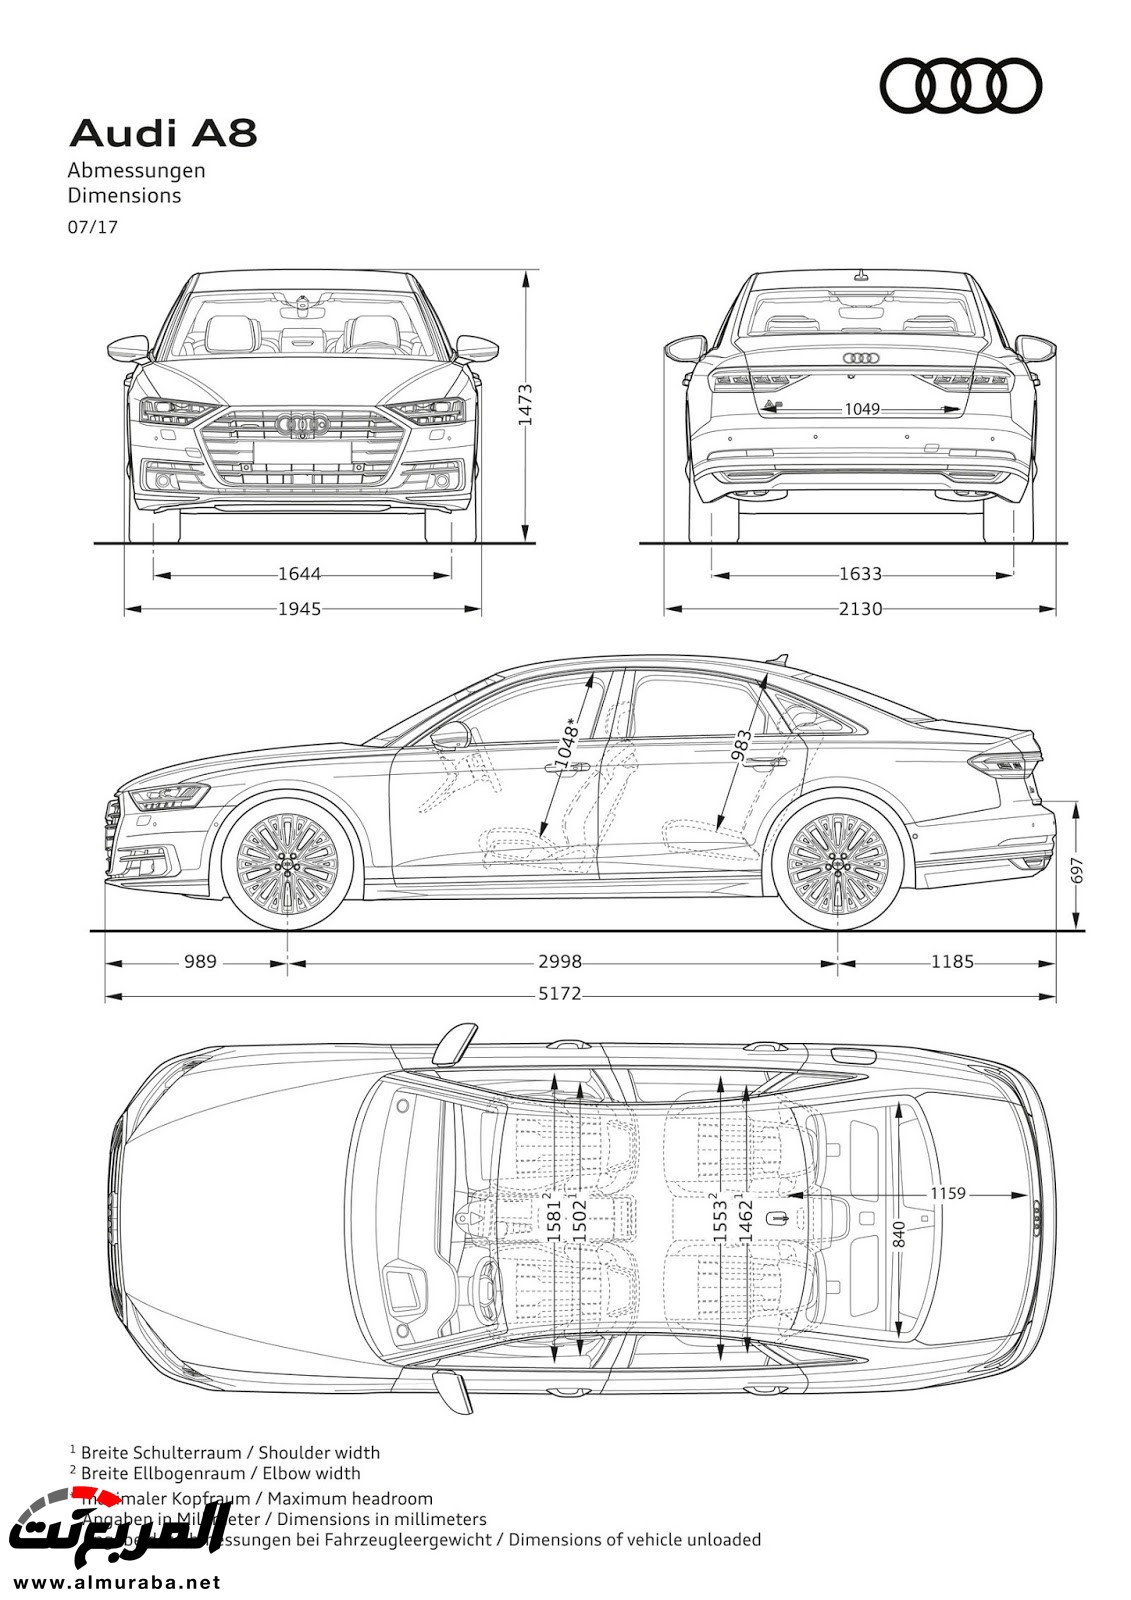 أودي A8 2018 الجديدة كلياً تكشف نفسها بتصميم وتقنيات متطورة "معلومات + 100 صورة" Audi A8 98